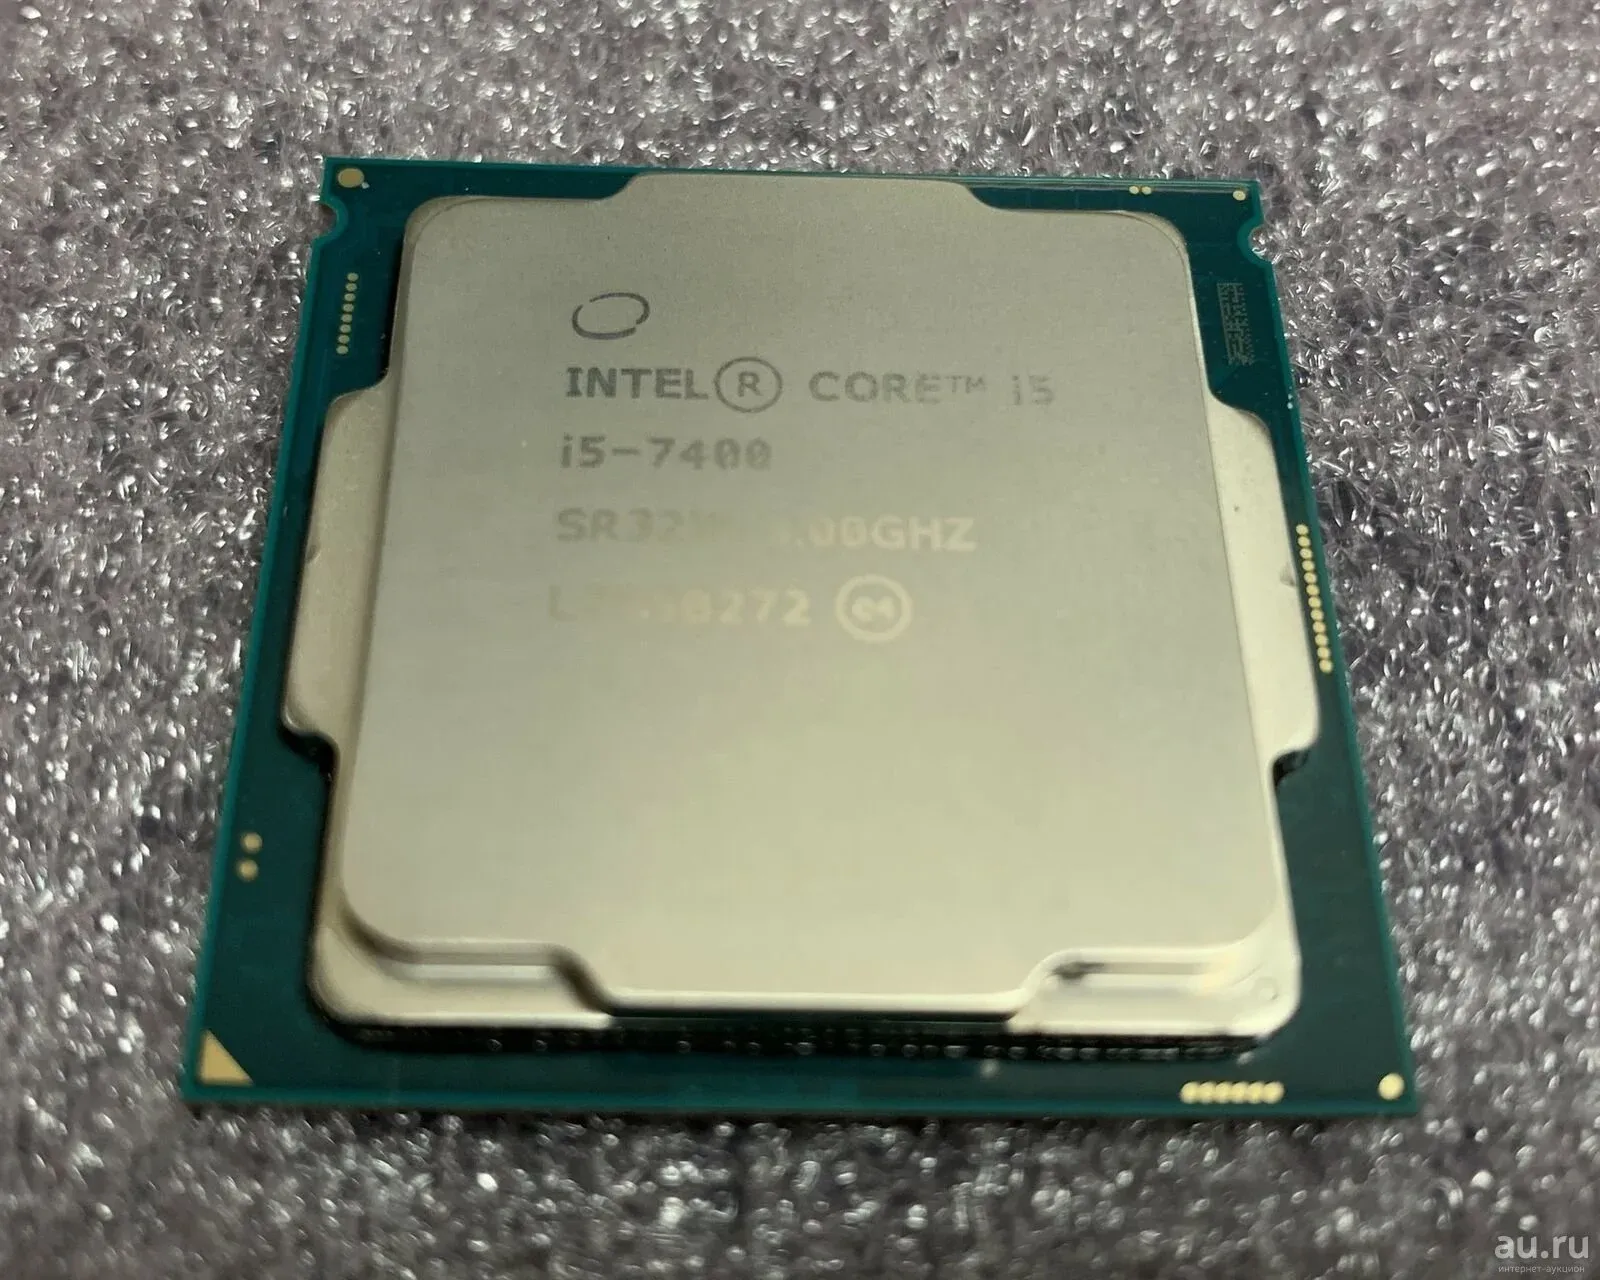 Интел коре 7400. Intel Core i5-7400. I5 7400. Интел i5 7400. Intel(r) Core(TM) i5-7400.